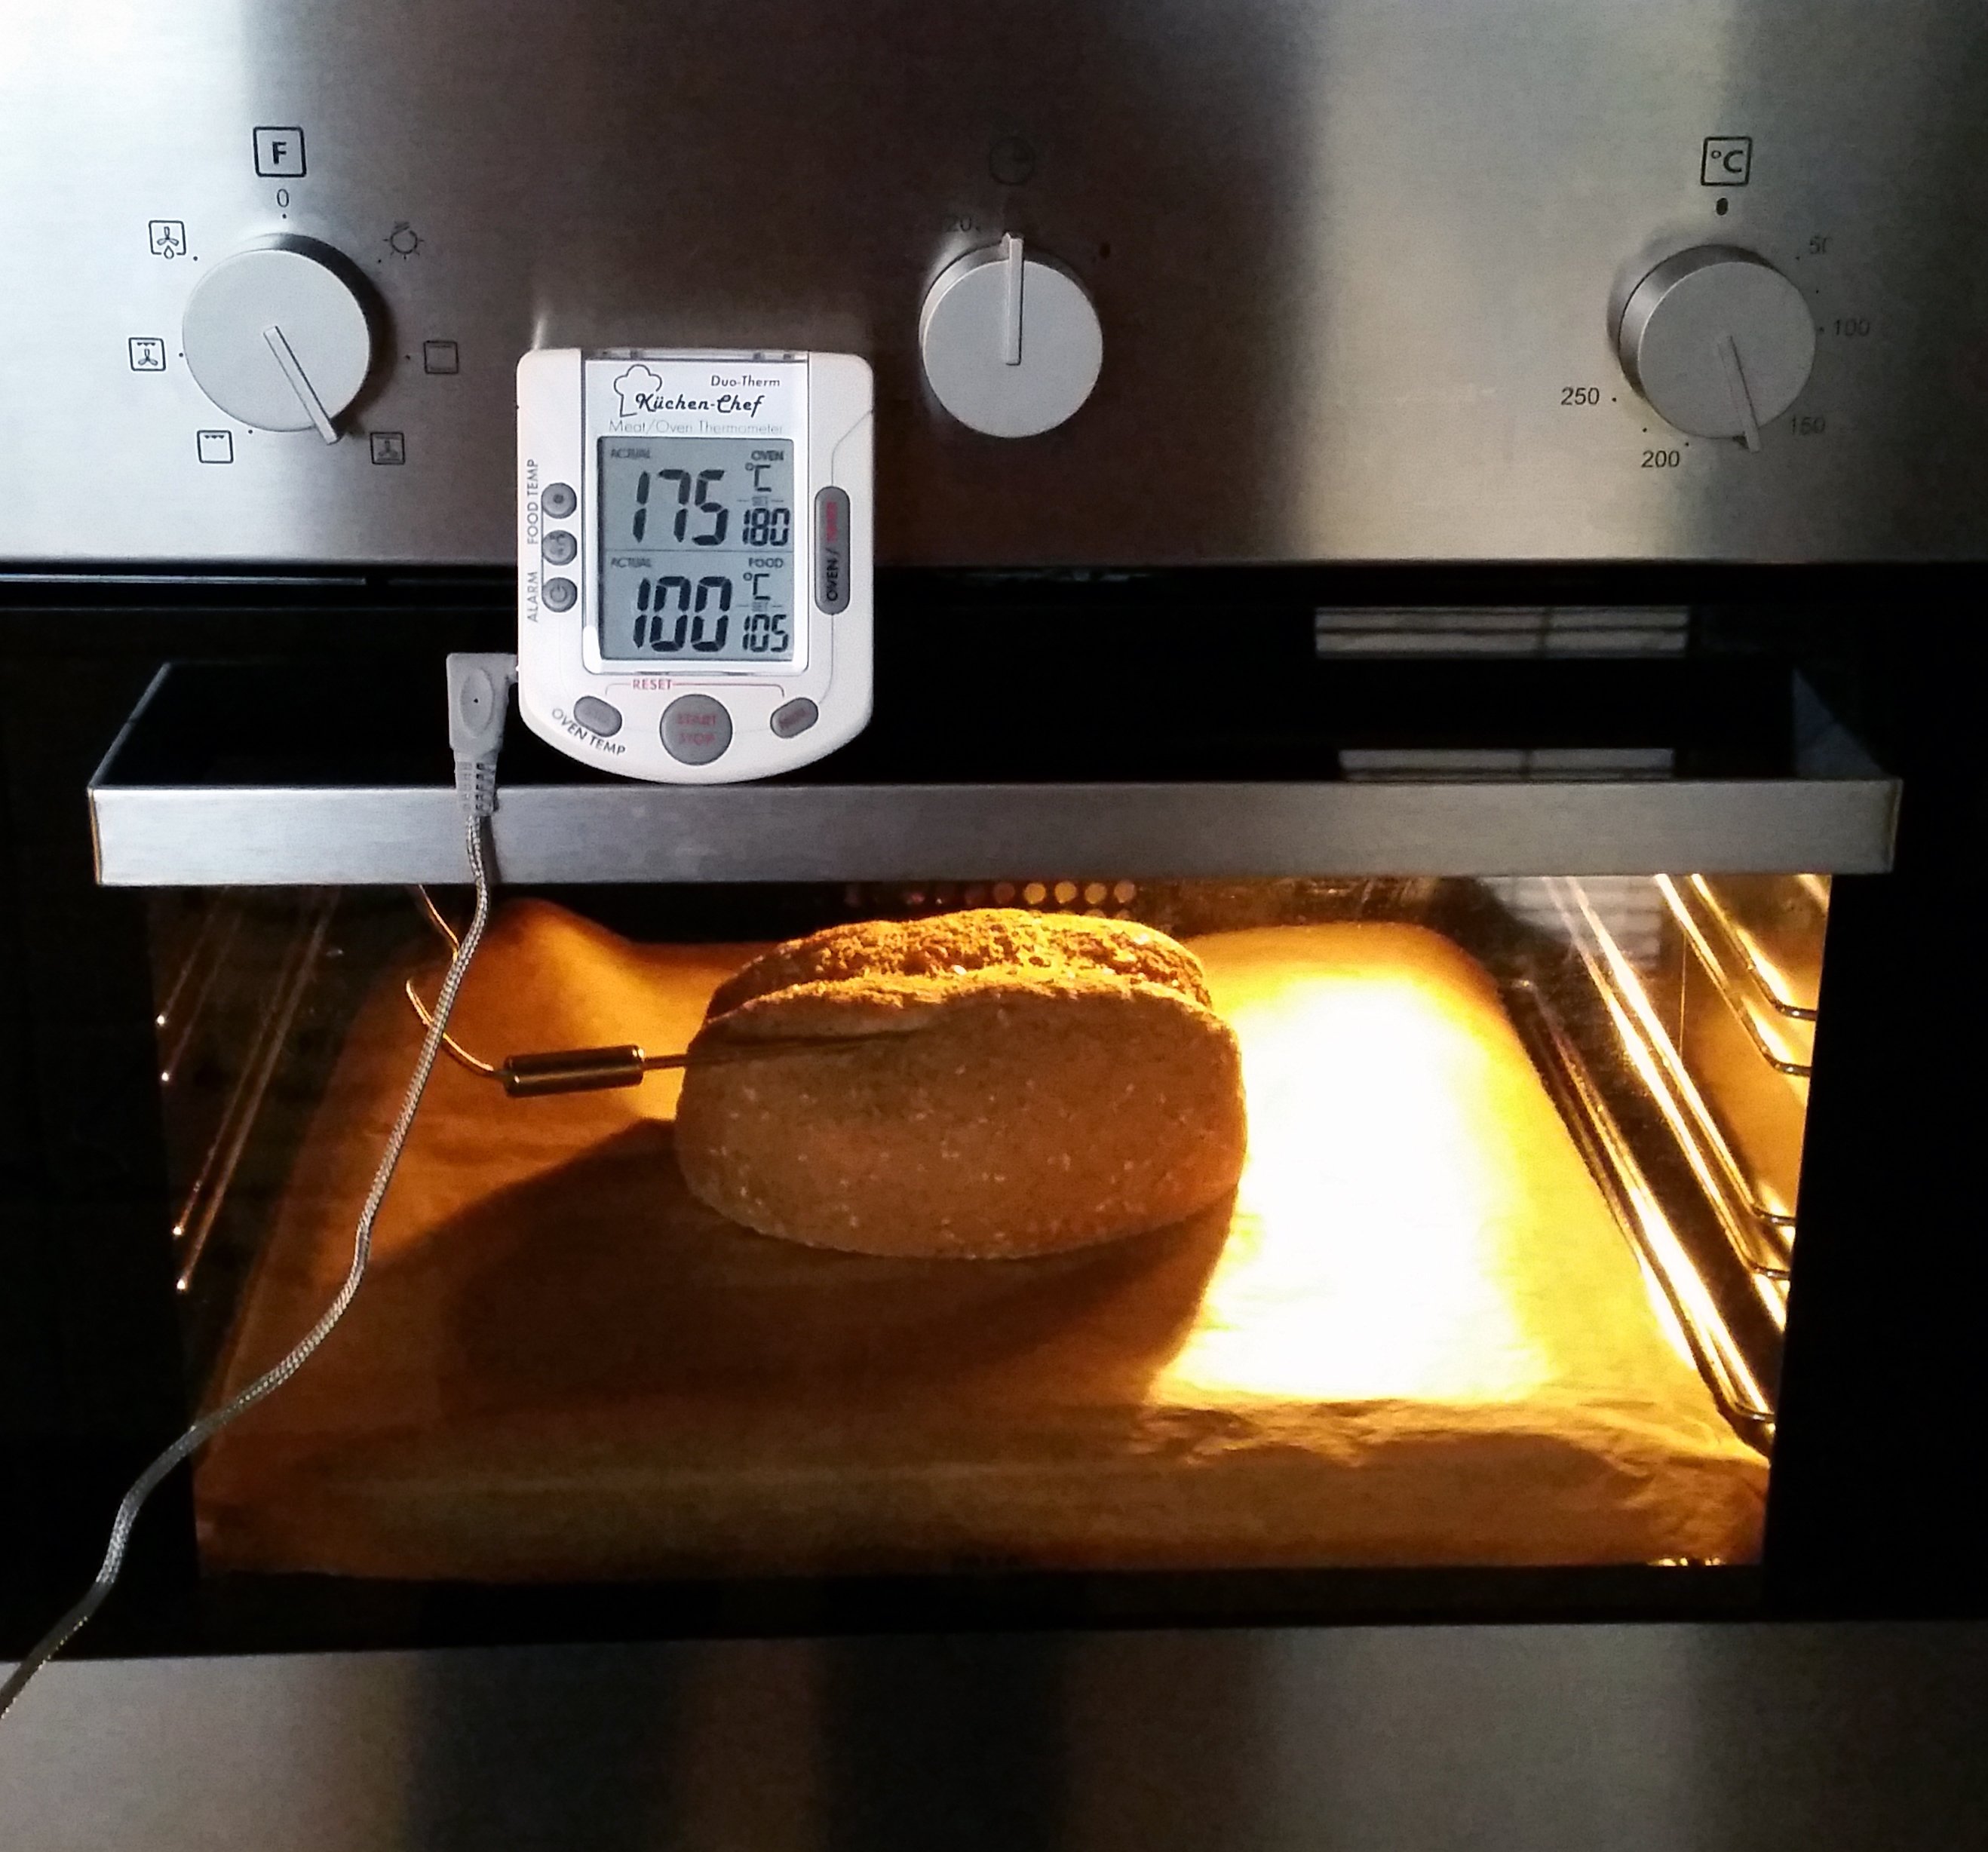 Der Ofen heizt konstant auf 175°C und dennoch steigt die Brottemperatur nicht höher als 100°C!